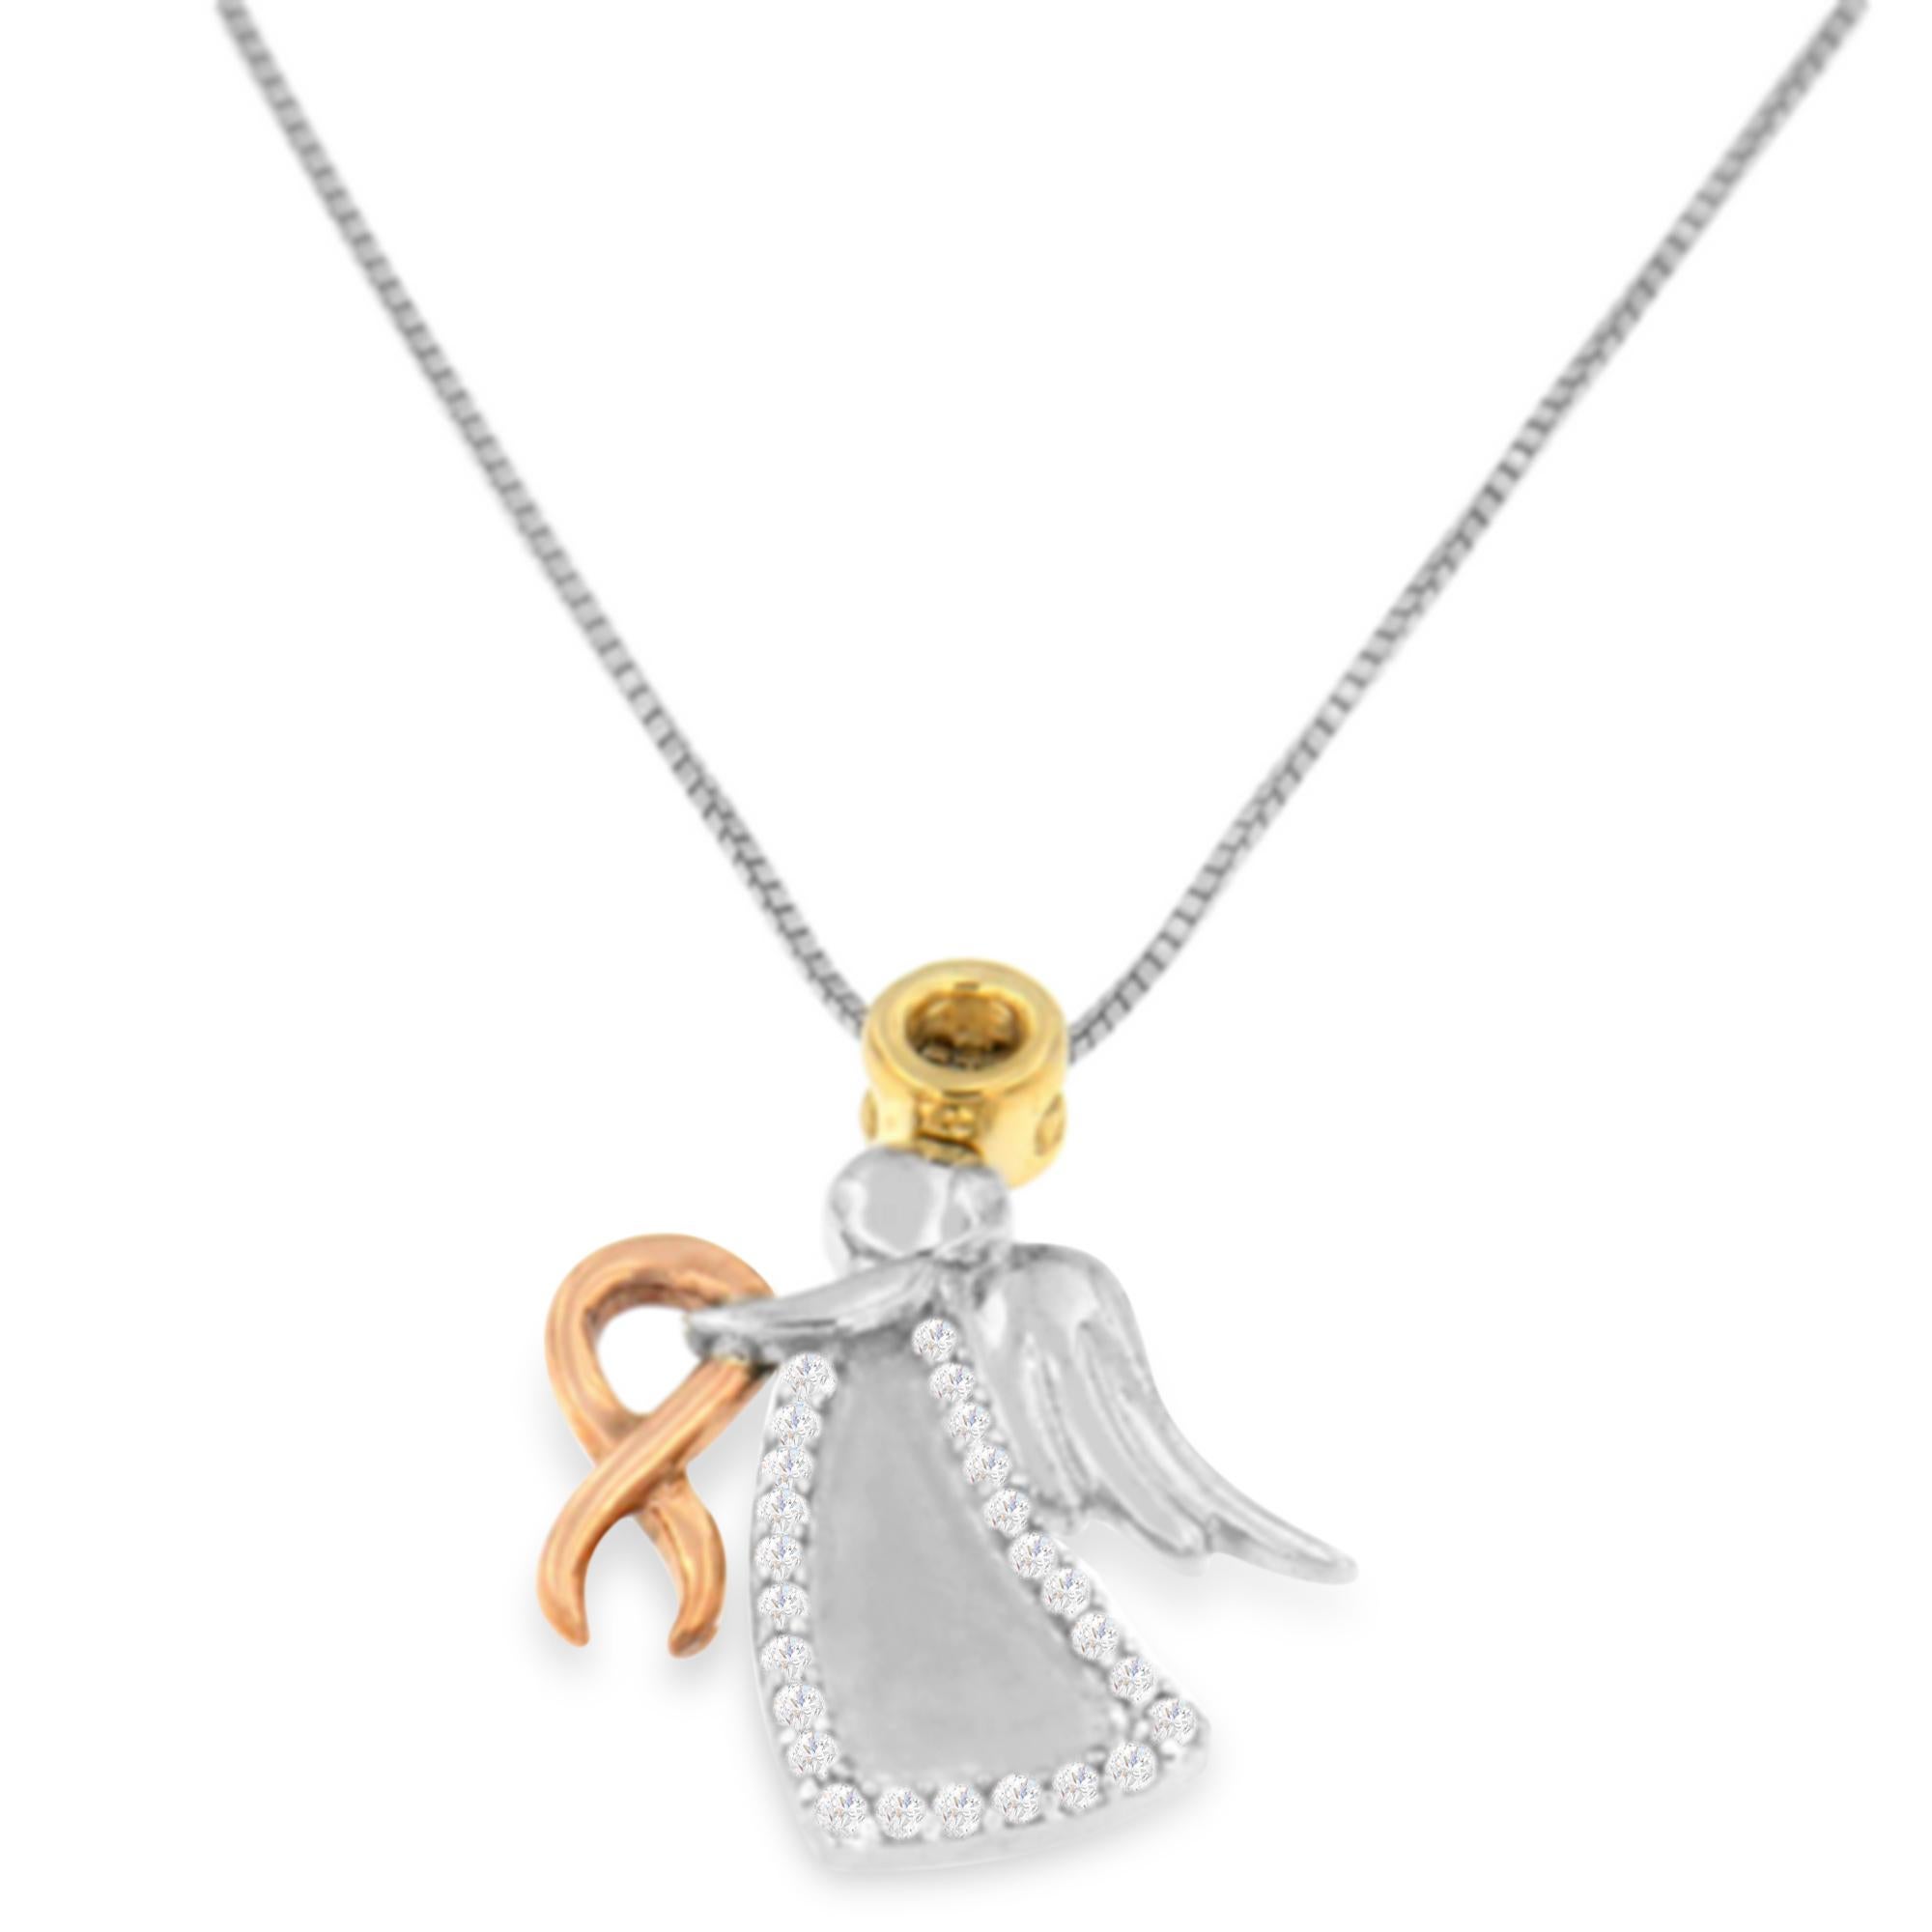 Ce charmant pendentif montre que les anges existent bel et bien. Serrant délicatement dans ses mains un ruban en or rose 10 carats, le bel ange est représenté dans le mélange d'or bicolore et d'argent blanc sous la forme d'un pendentif. Elle est